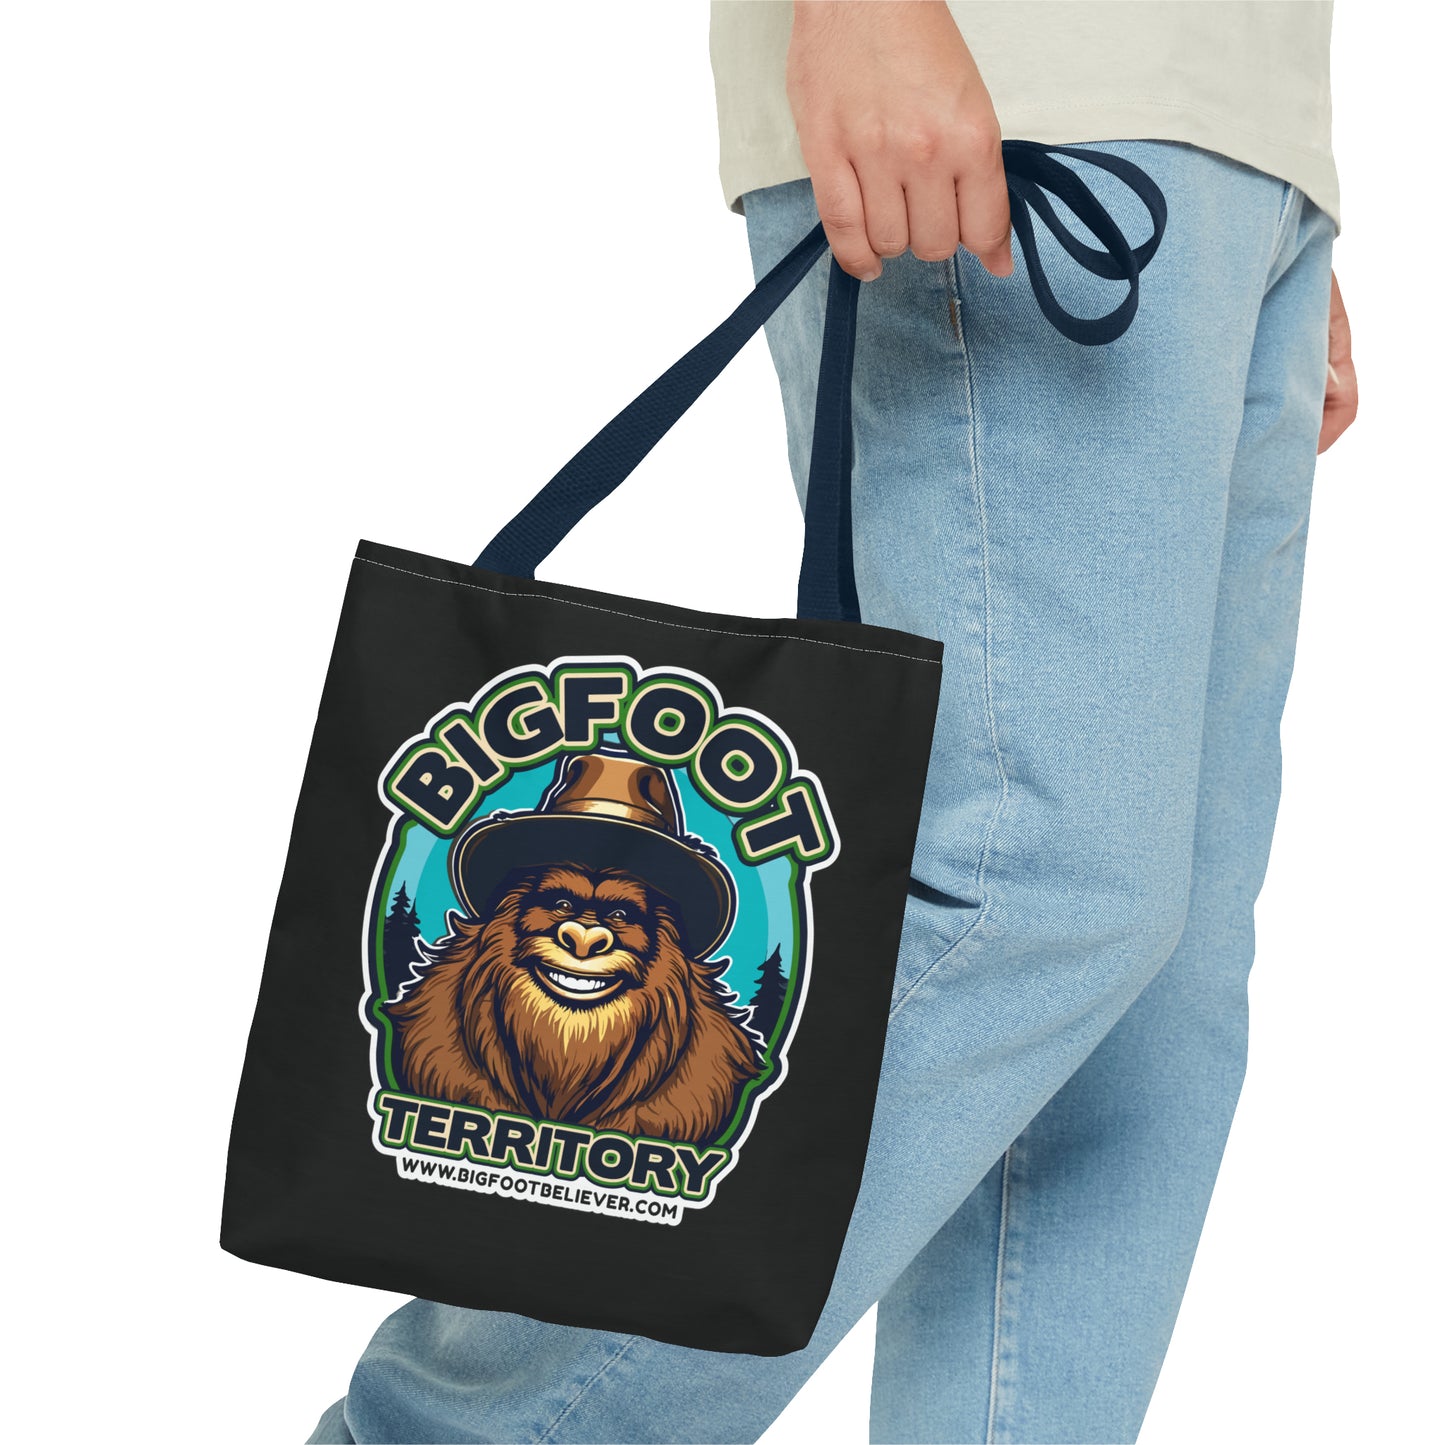 Bigfoot Territory Tote Bag (AOP)